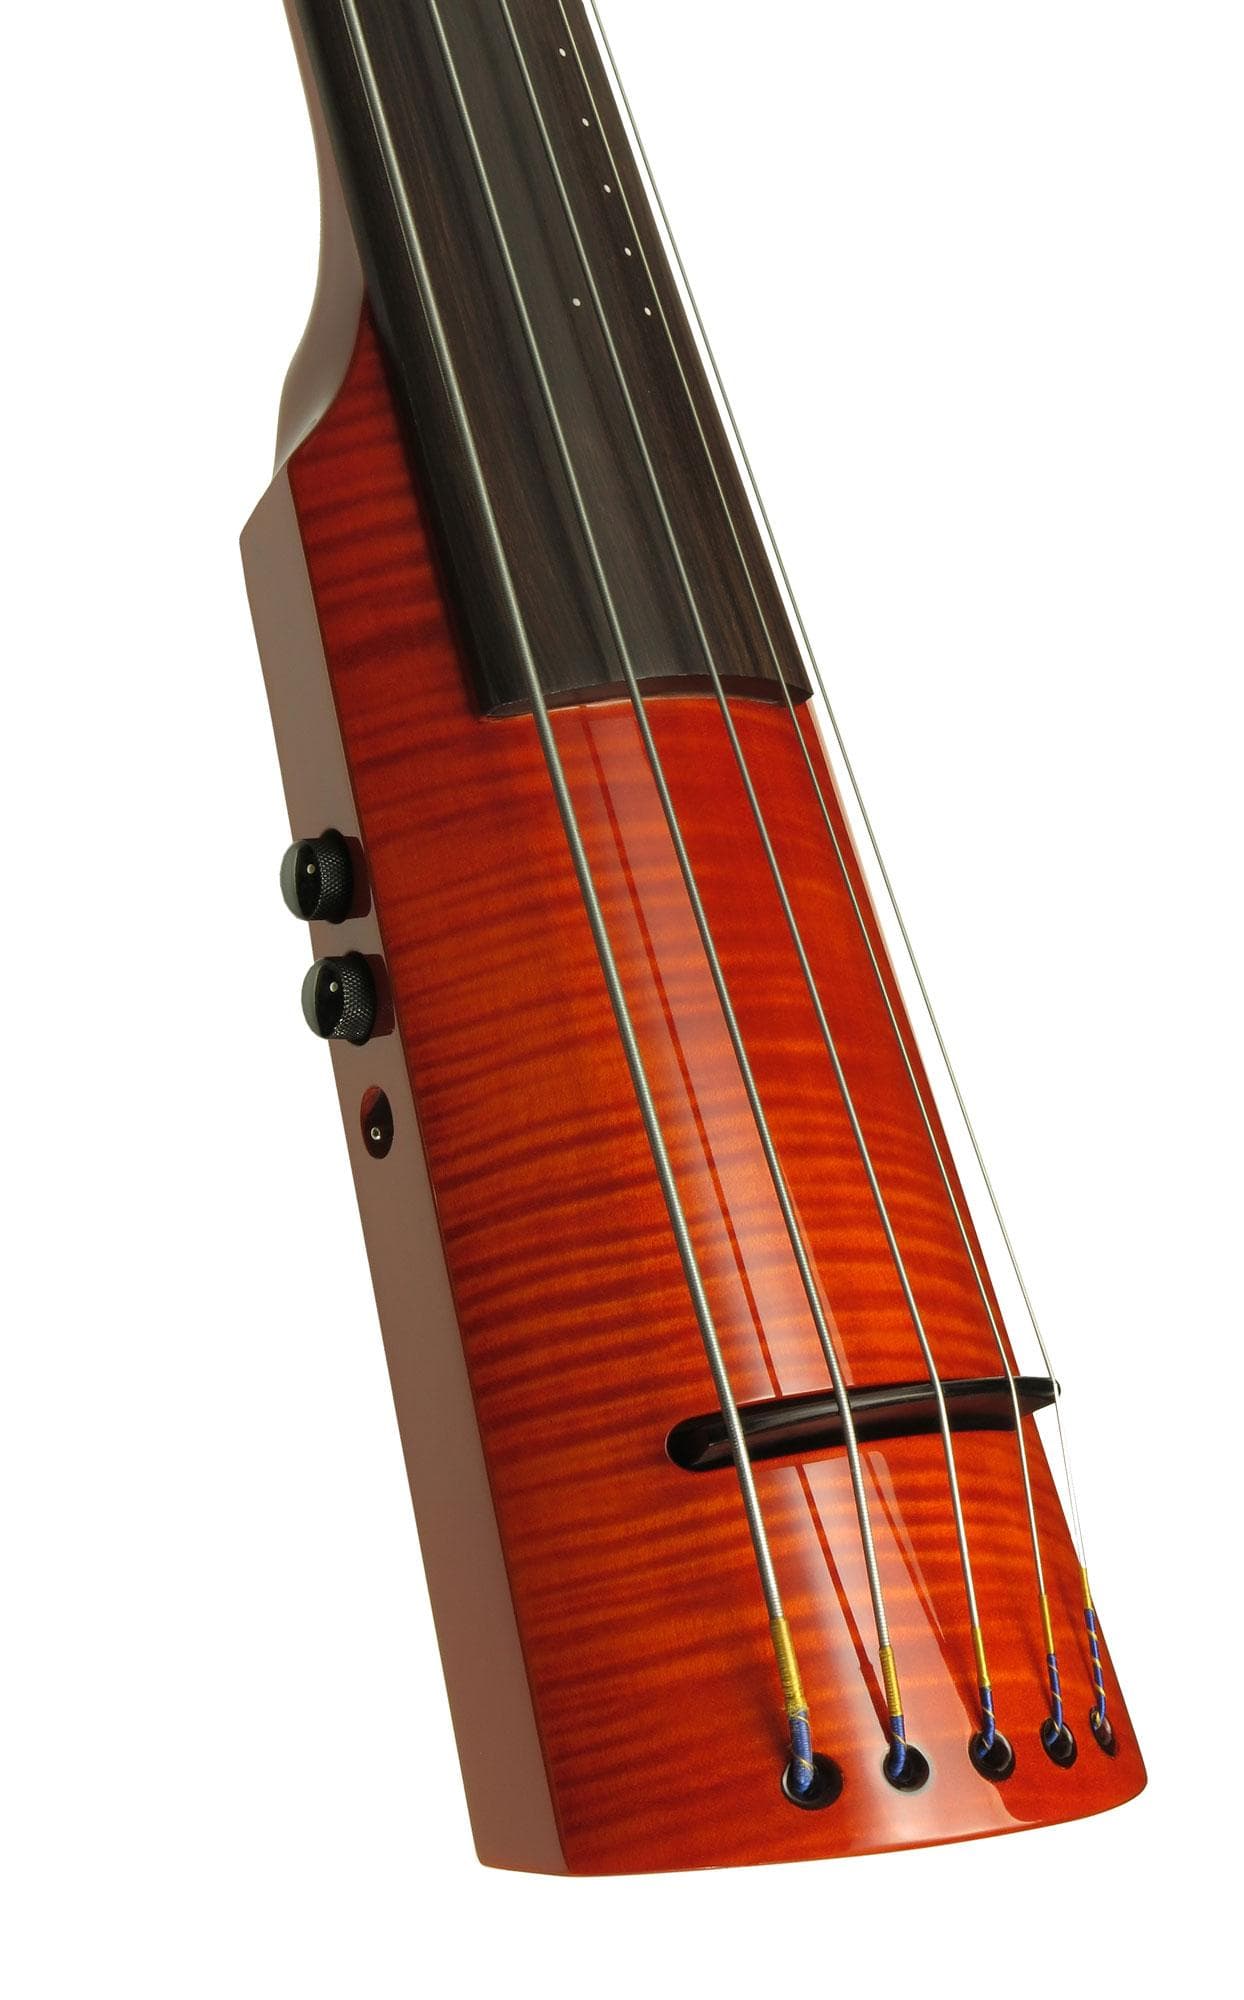 NS Design WAV5 Series Double Bass Amber